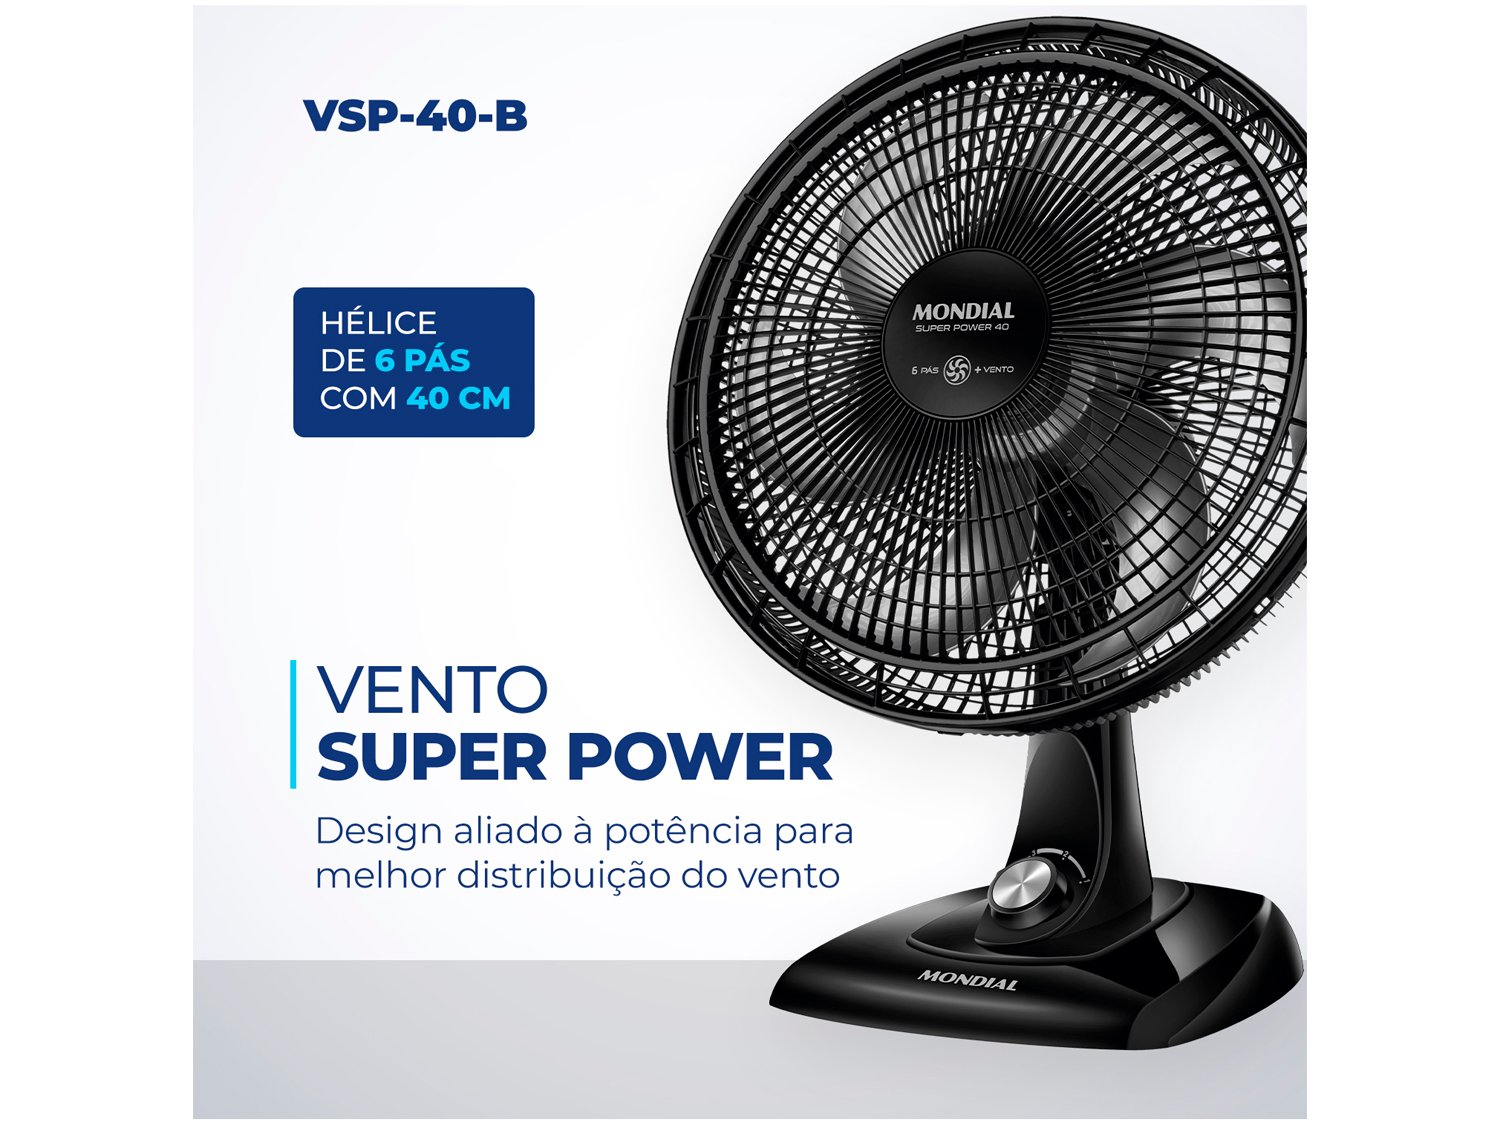 Ventilador de Mesa Mondial Super Power VSP-40-B - 40cm 3 Velocidades - 110 V - 2